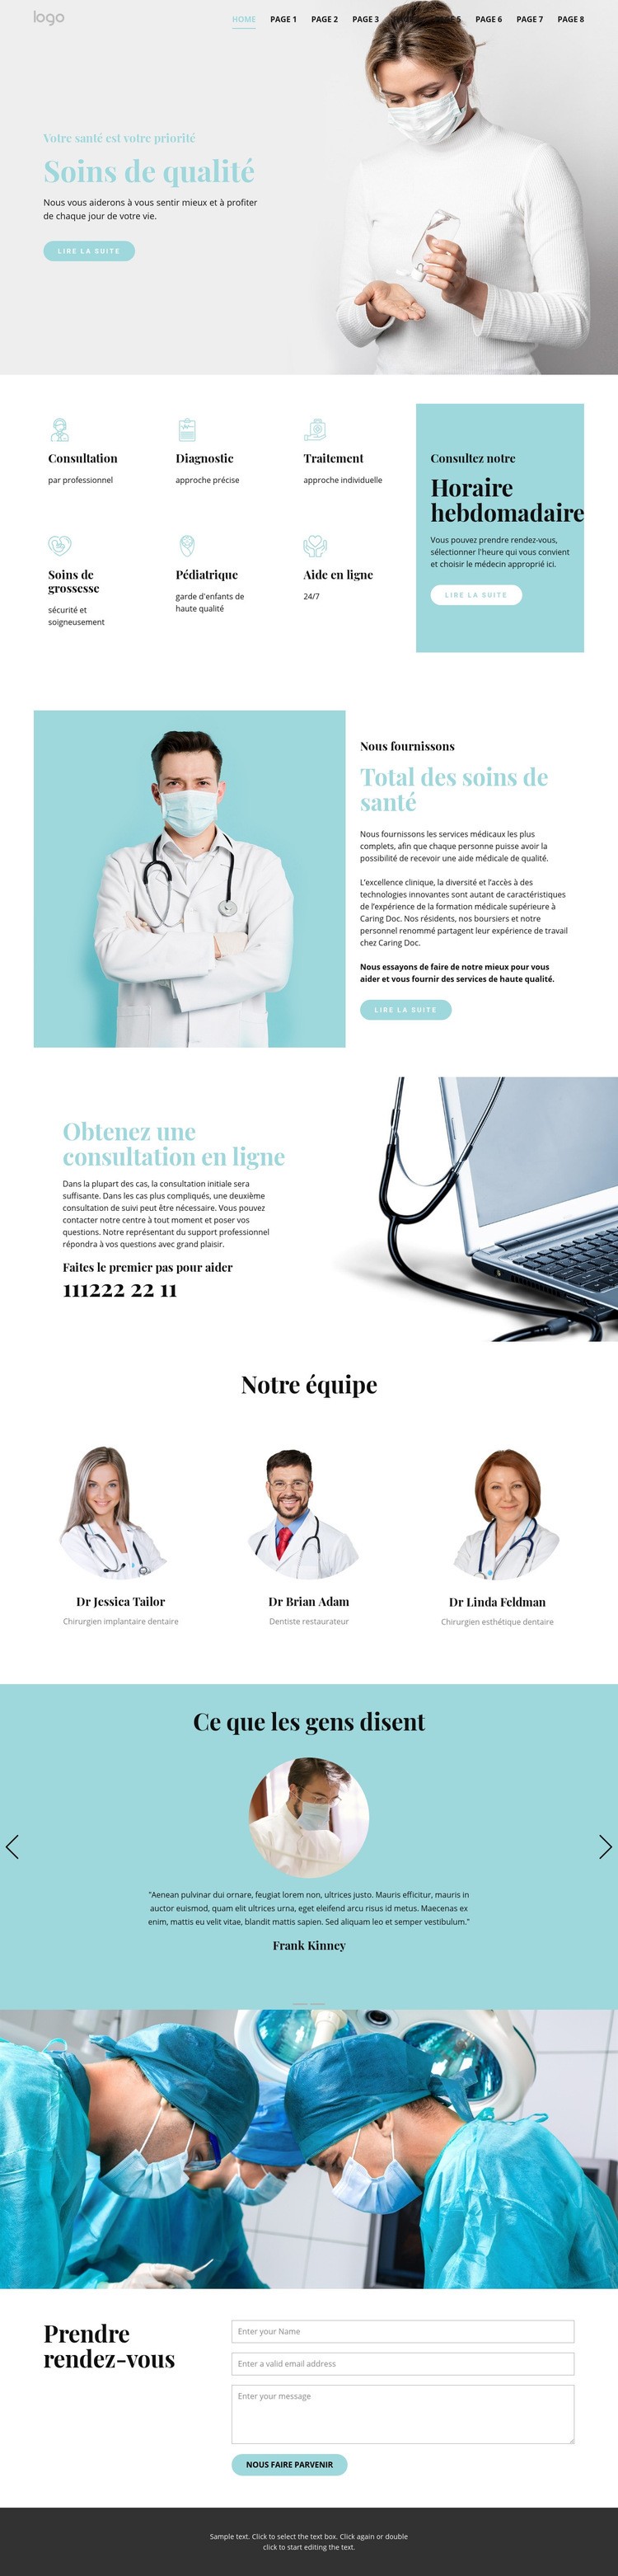 Des soins médicaux de qualité Modèle HTML5